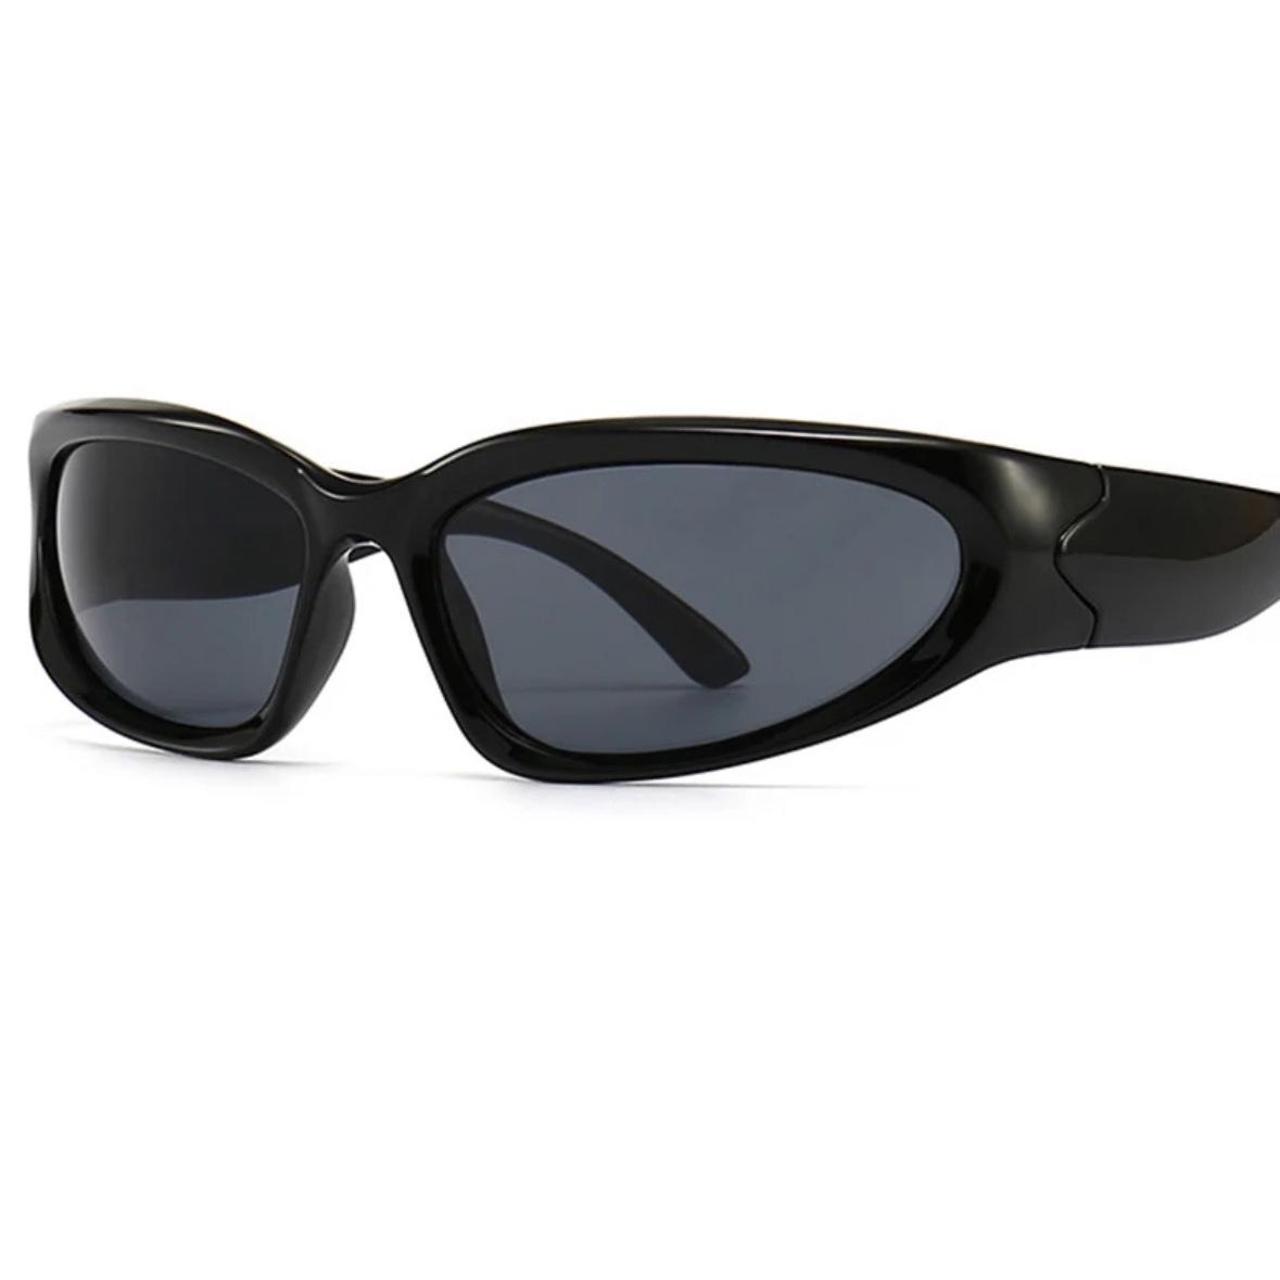 Chic Women's Black Sunglasses (2)